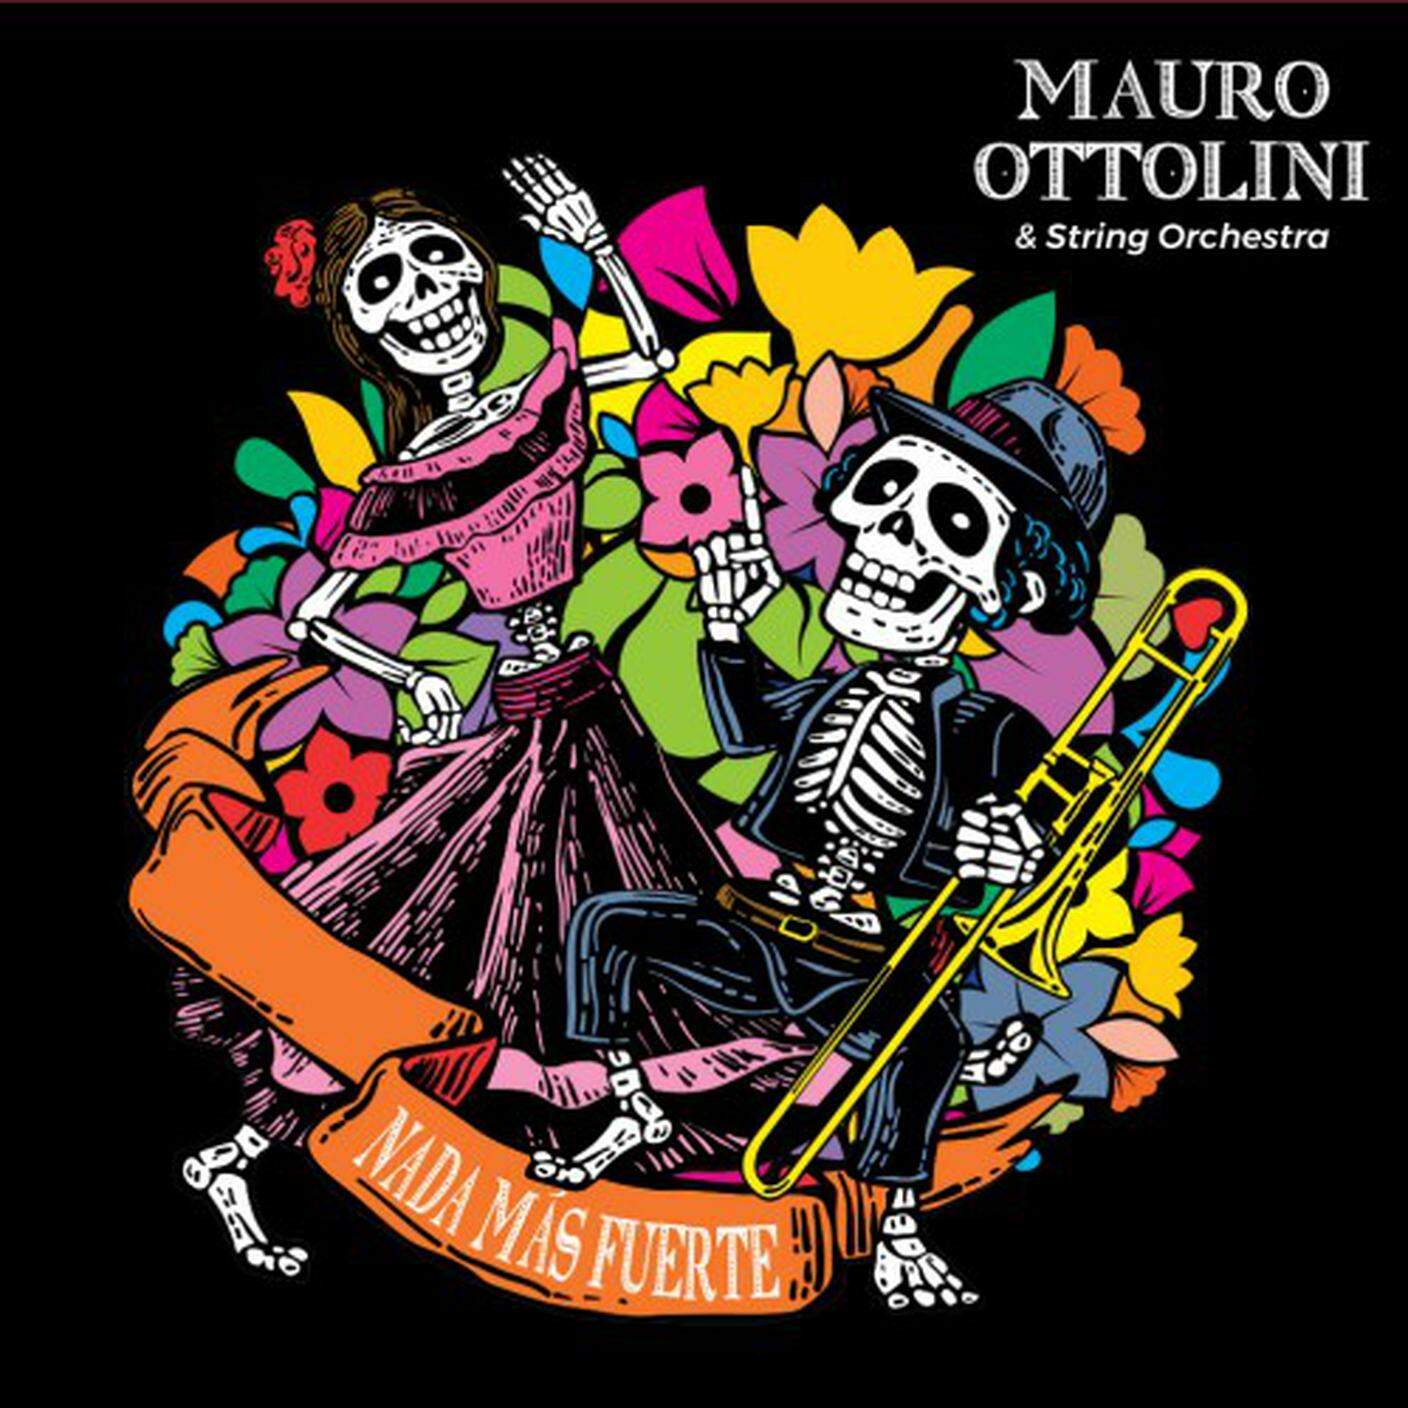 “Nada mas fuerte” di Mauro Ottolini & String Orchestra, Azzurra Music (dettaglio di copertina)